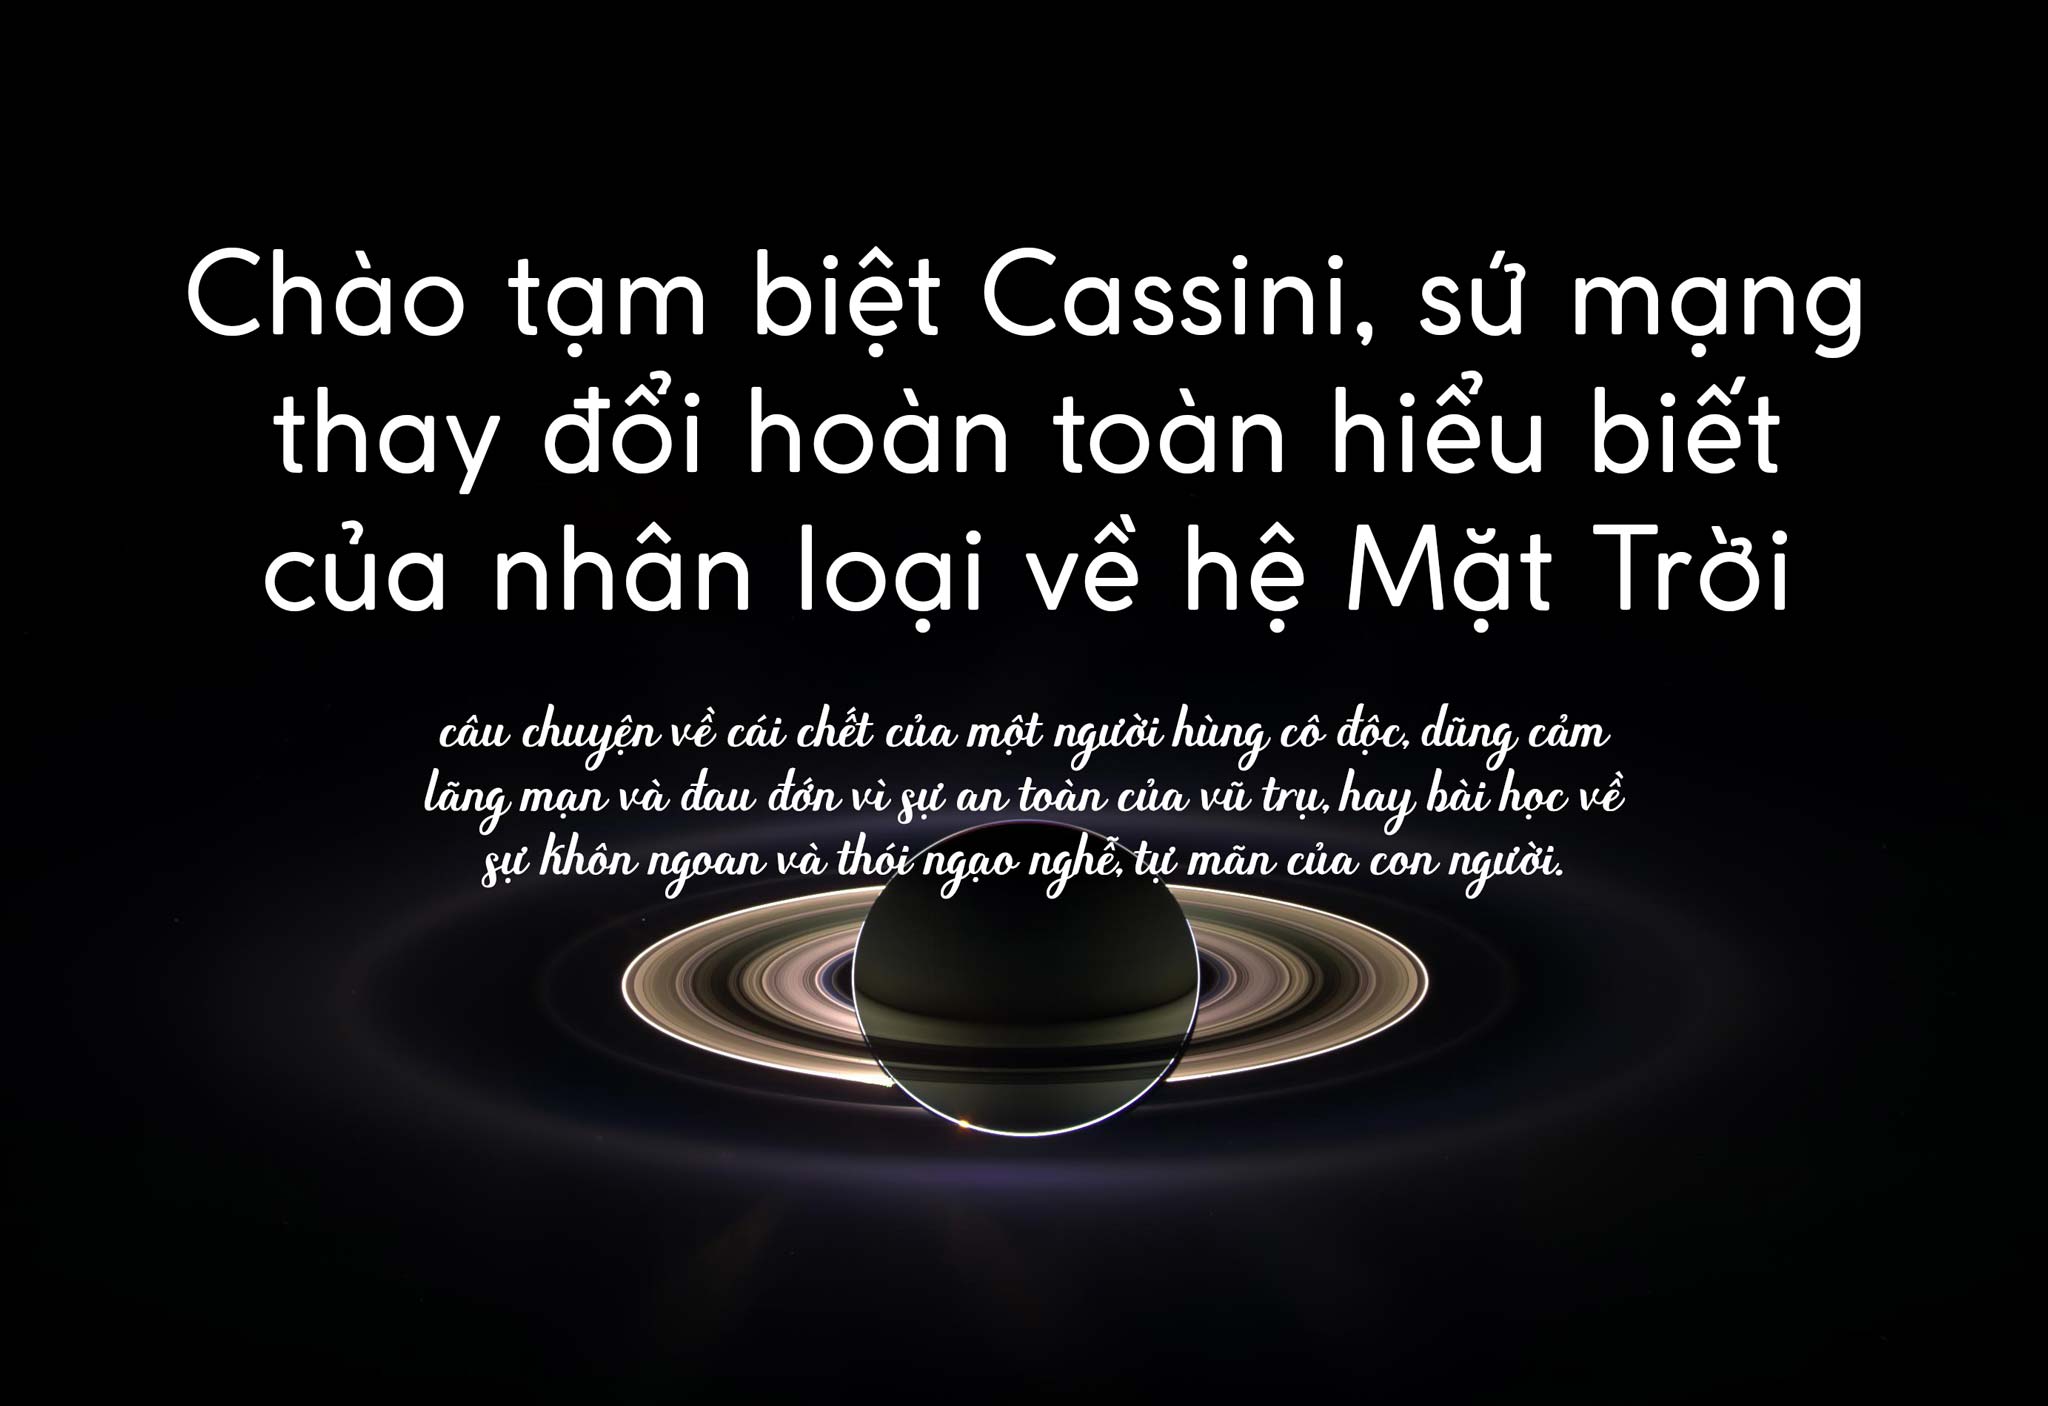 Cassini và hành trình đi viết lại hiểu biết thiển cận của loài người về hệ Mặt Trời